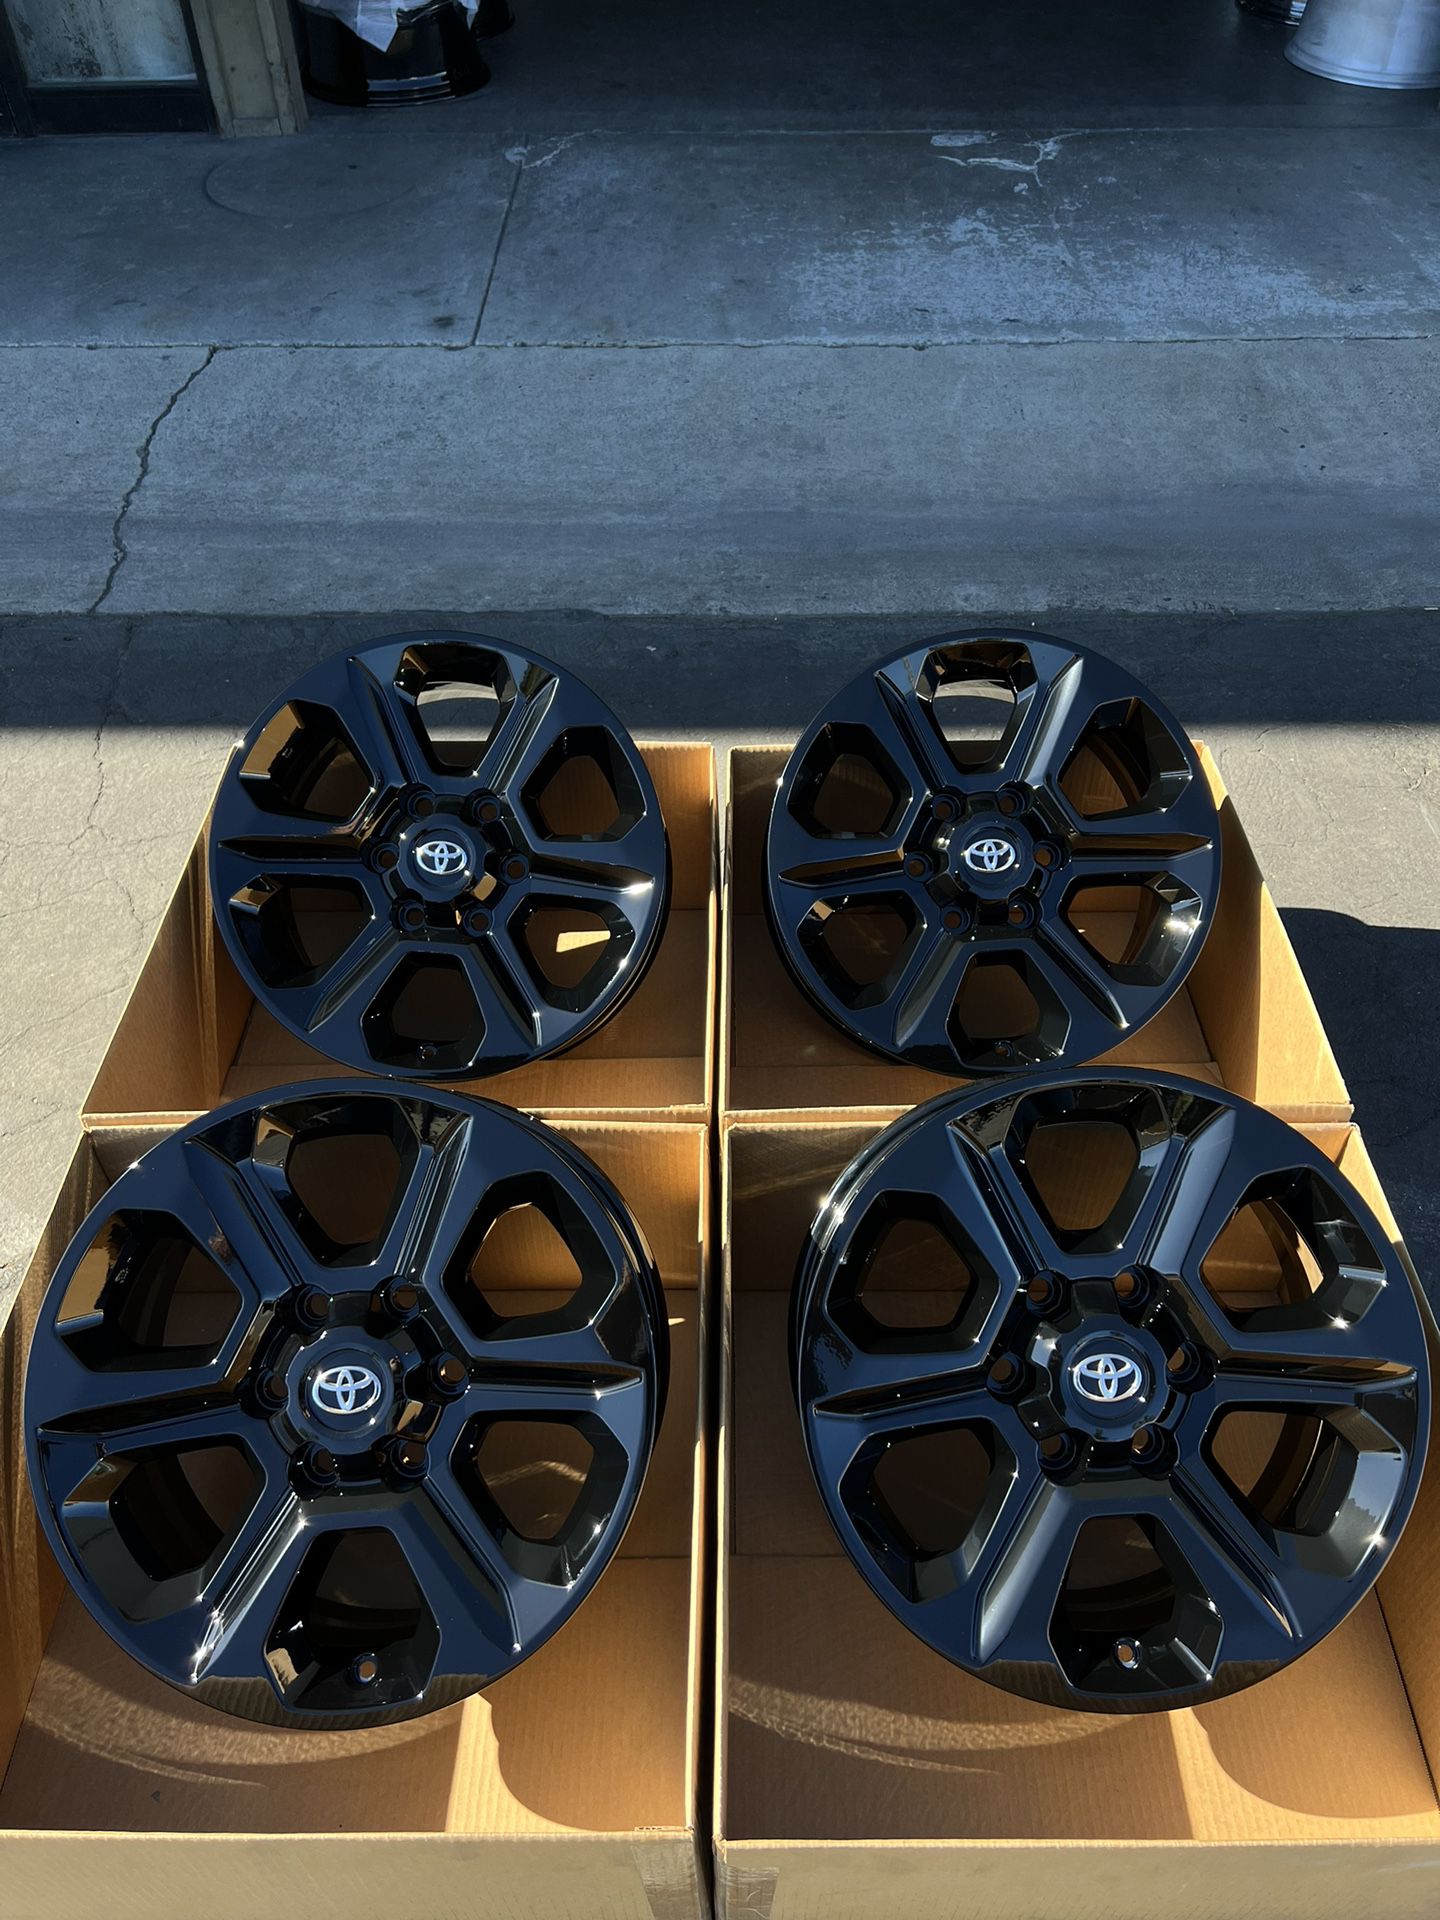 Toyota 17” 4Runner Wheels Rims Gloss Black